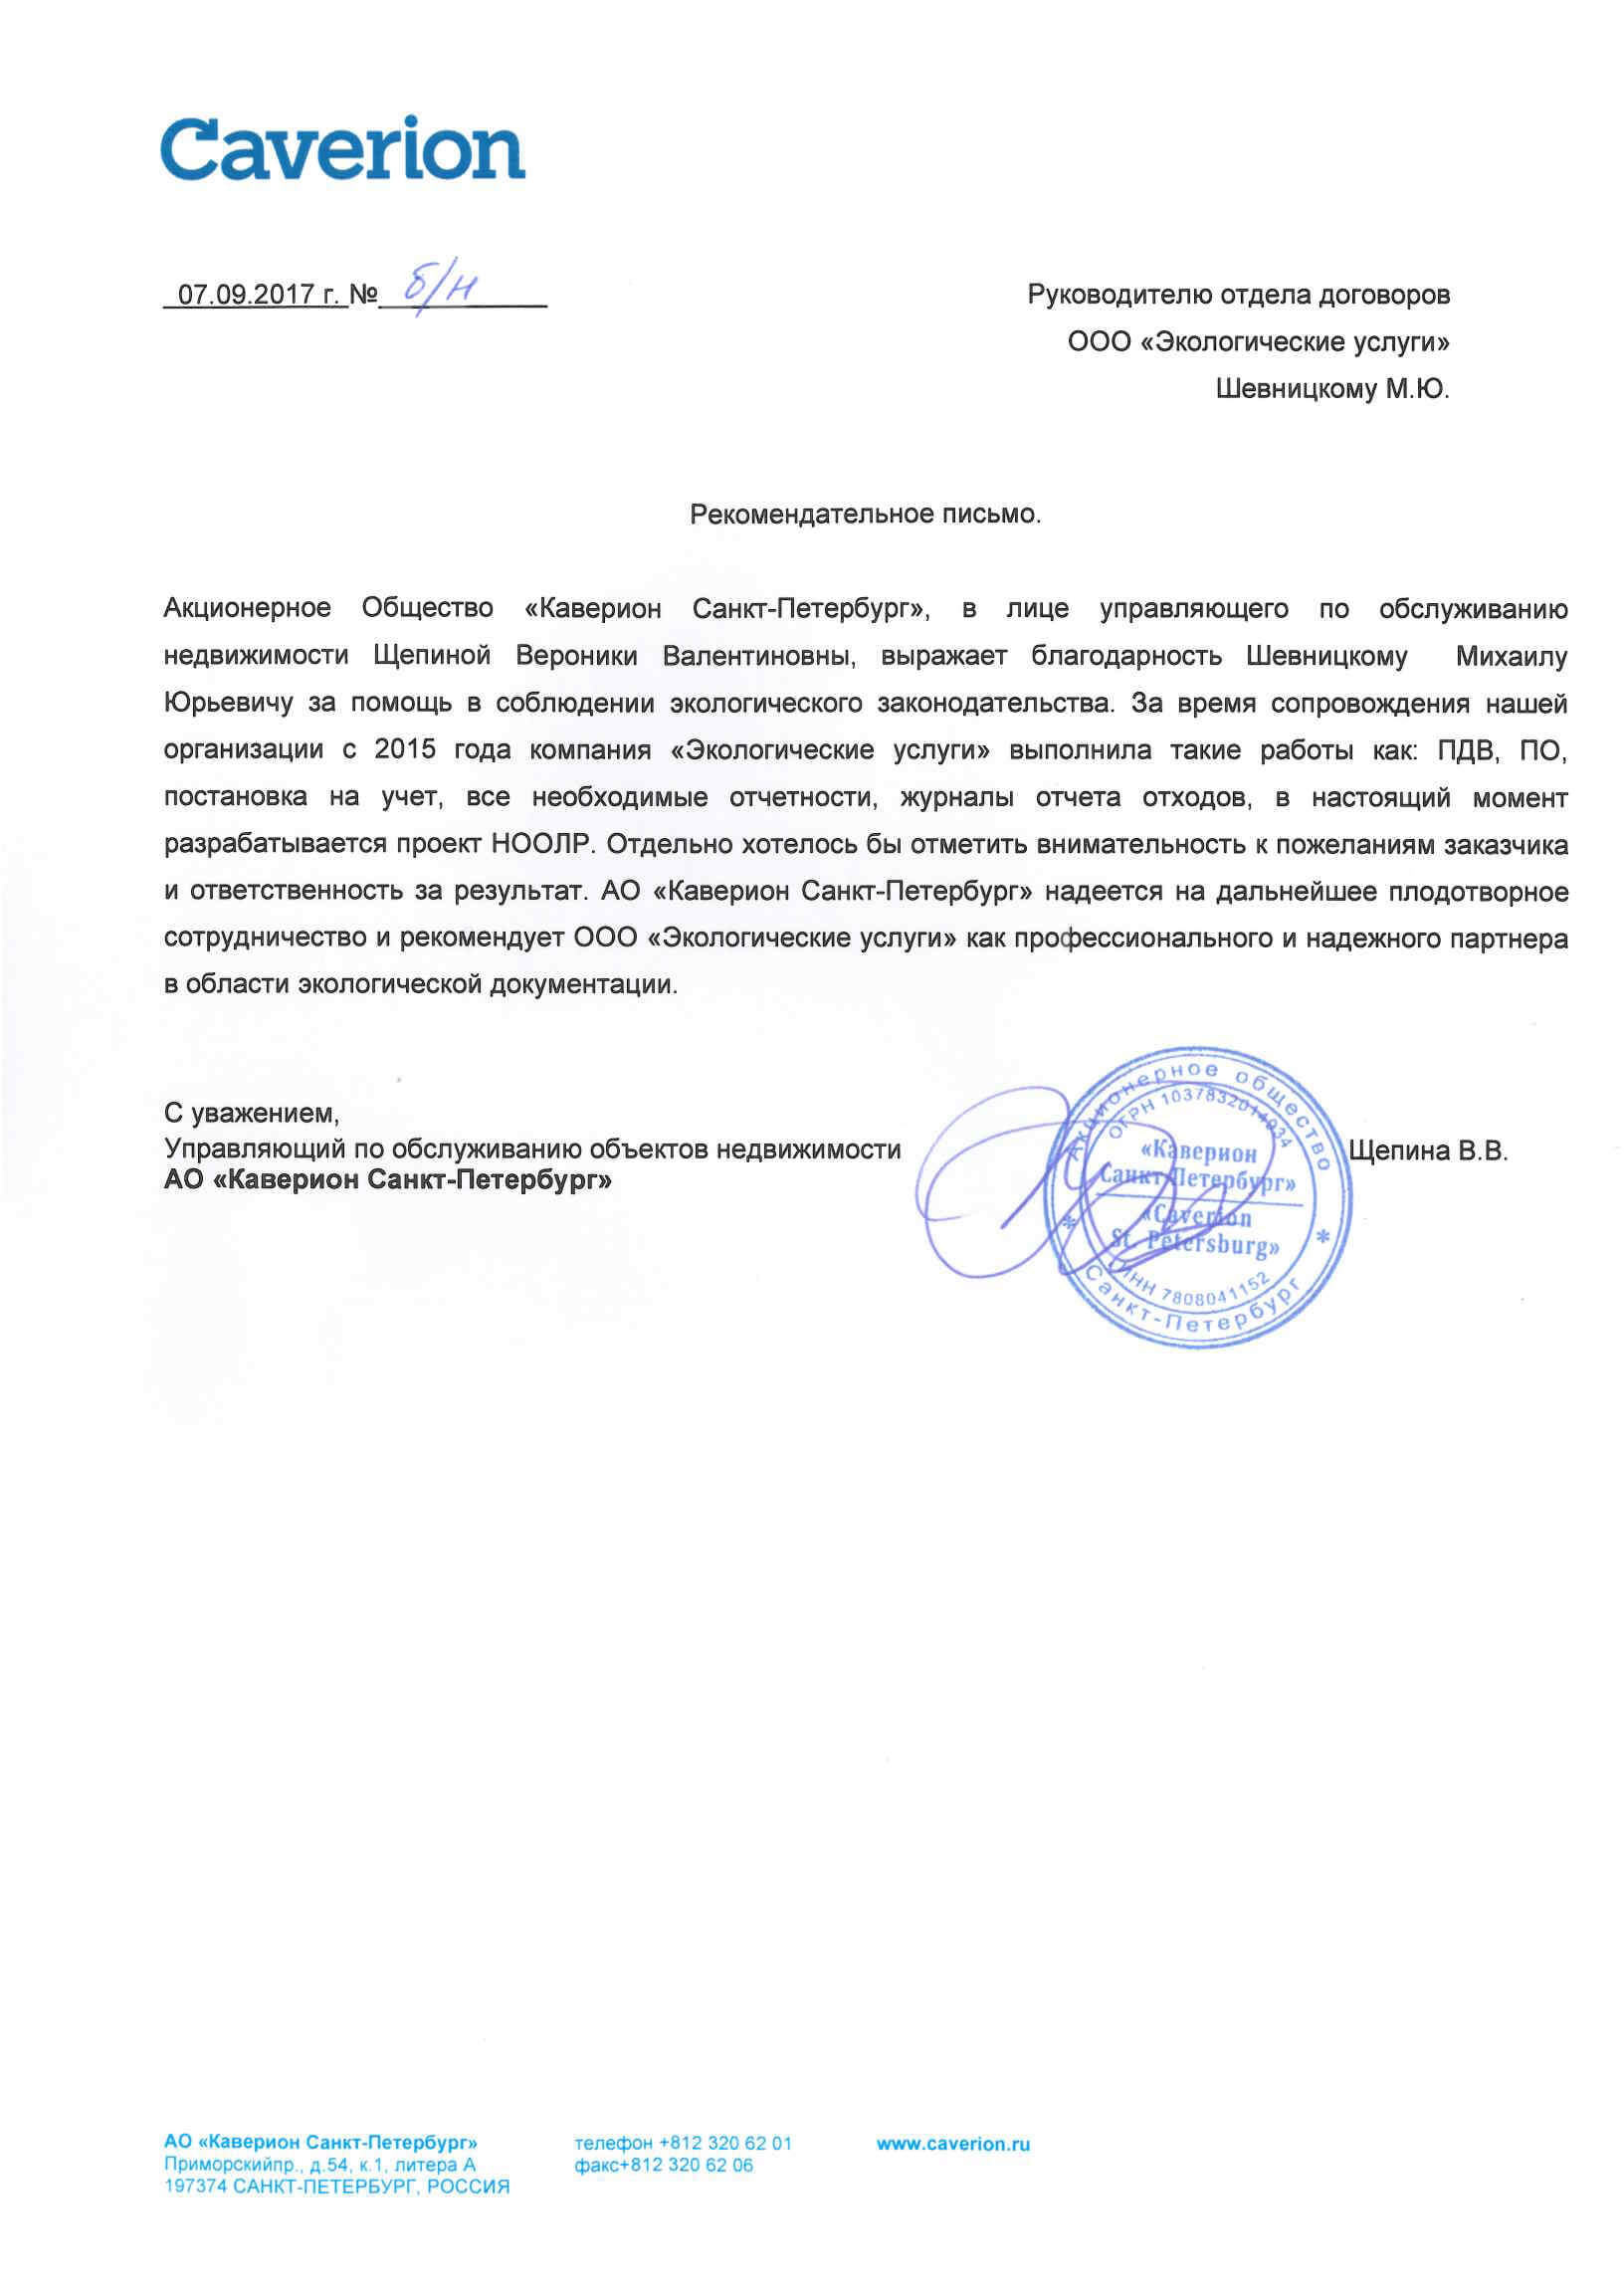 Рекомендательное письмо от АО "Каверион Санкт-Петербург"